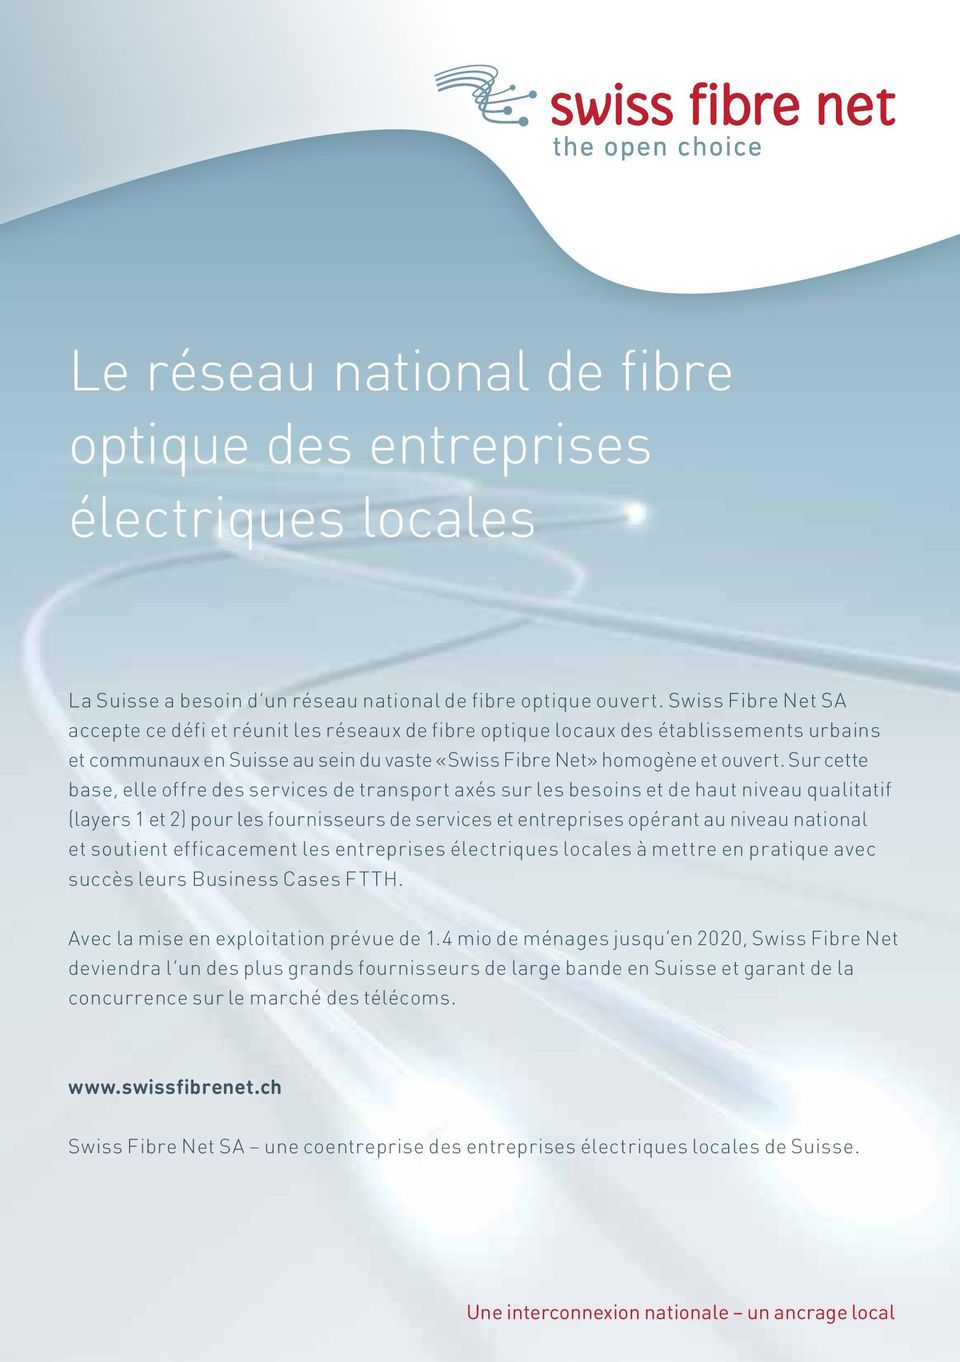 national de fibre optique ouvert. Swiss Fibre Net SA und offenen «Swiss Fibre Net».